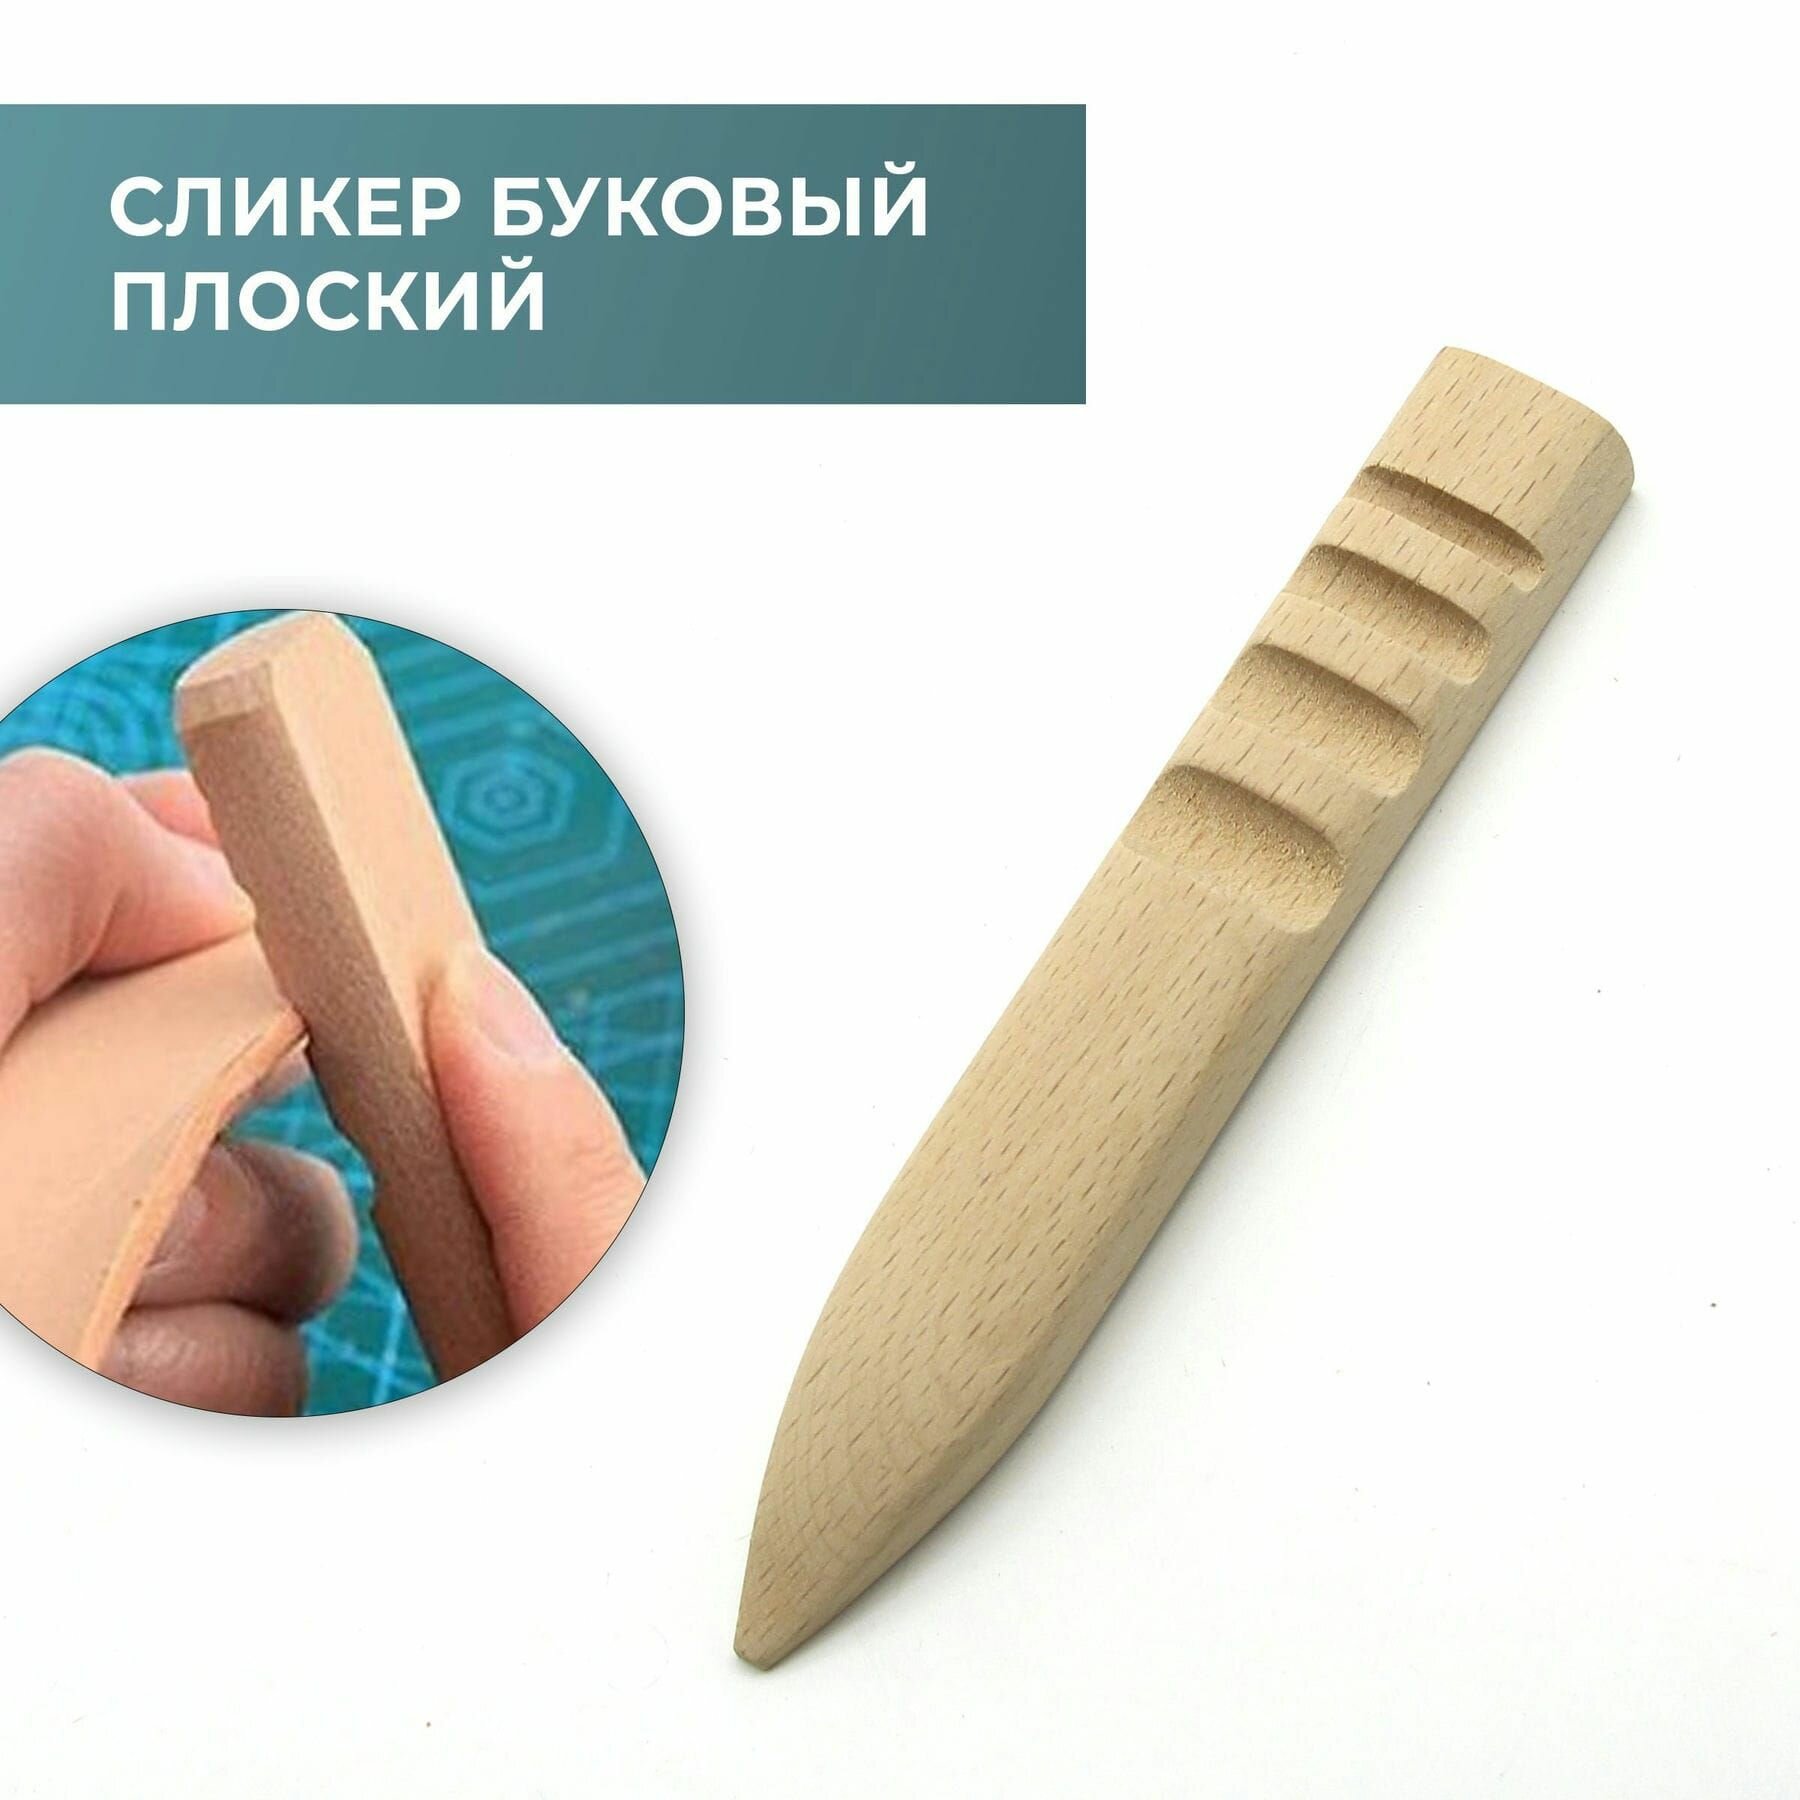 Сликер буковый плоский для полировки урезов кожи / Инструмент для снятия фаски / Борд для полировки урезов